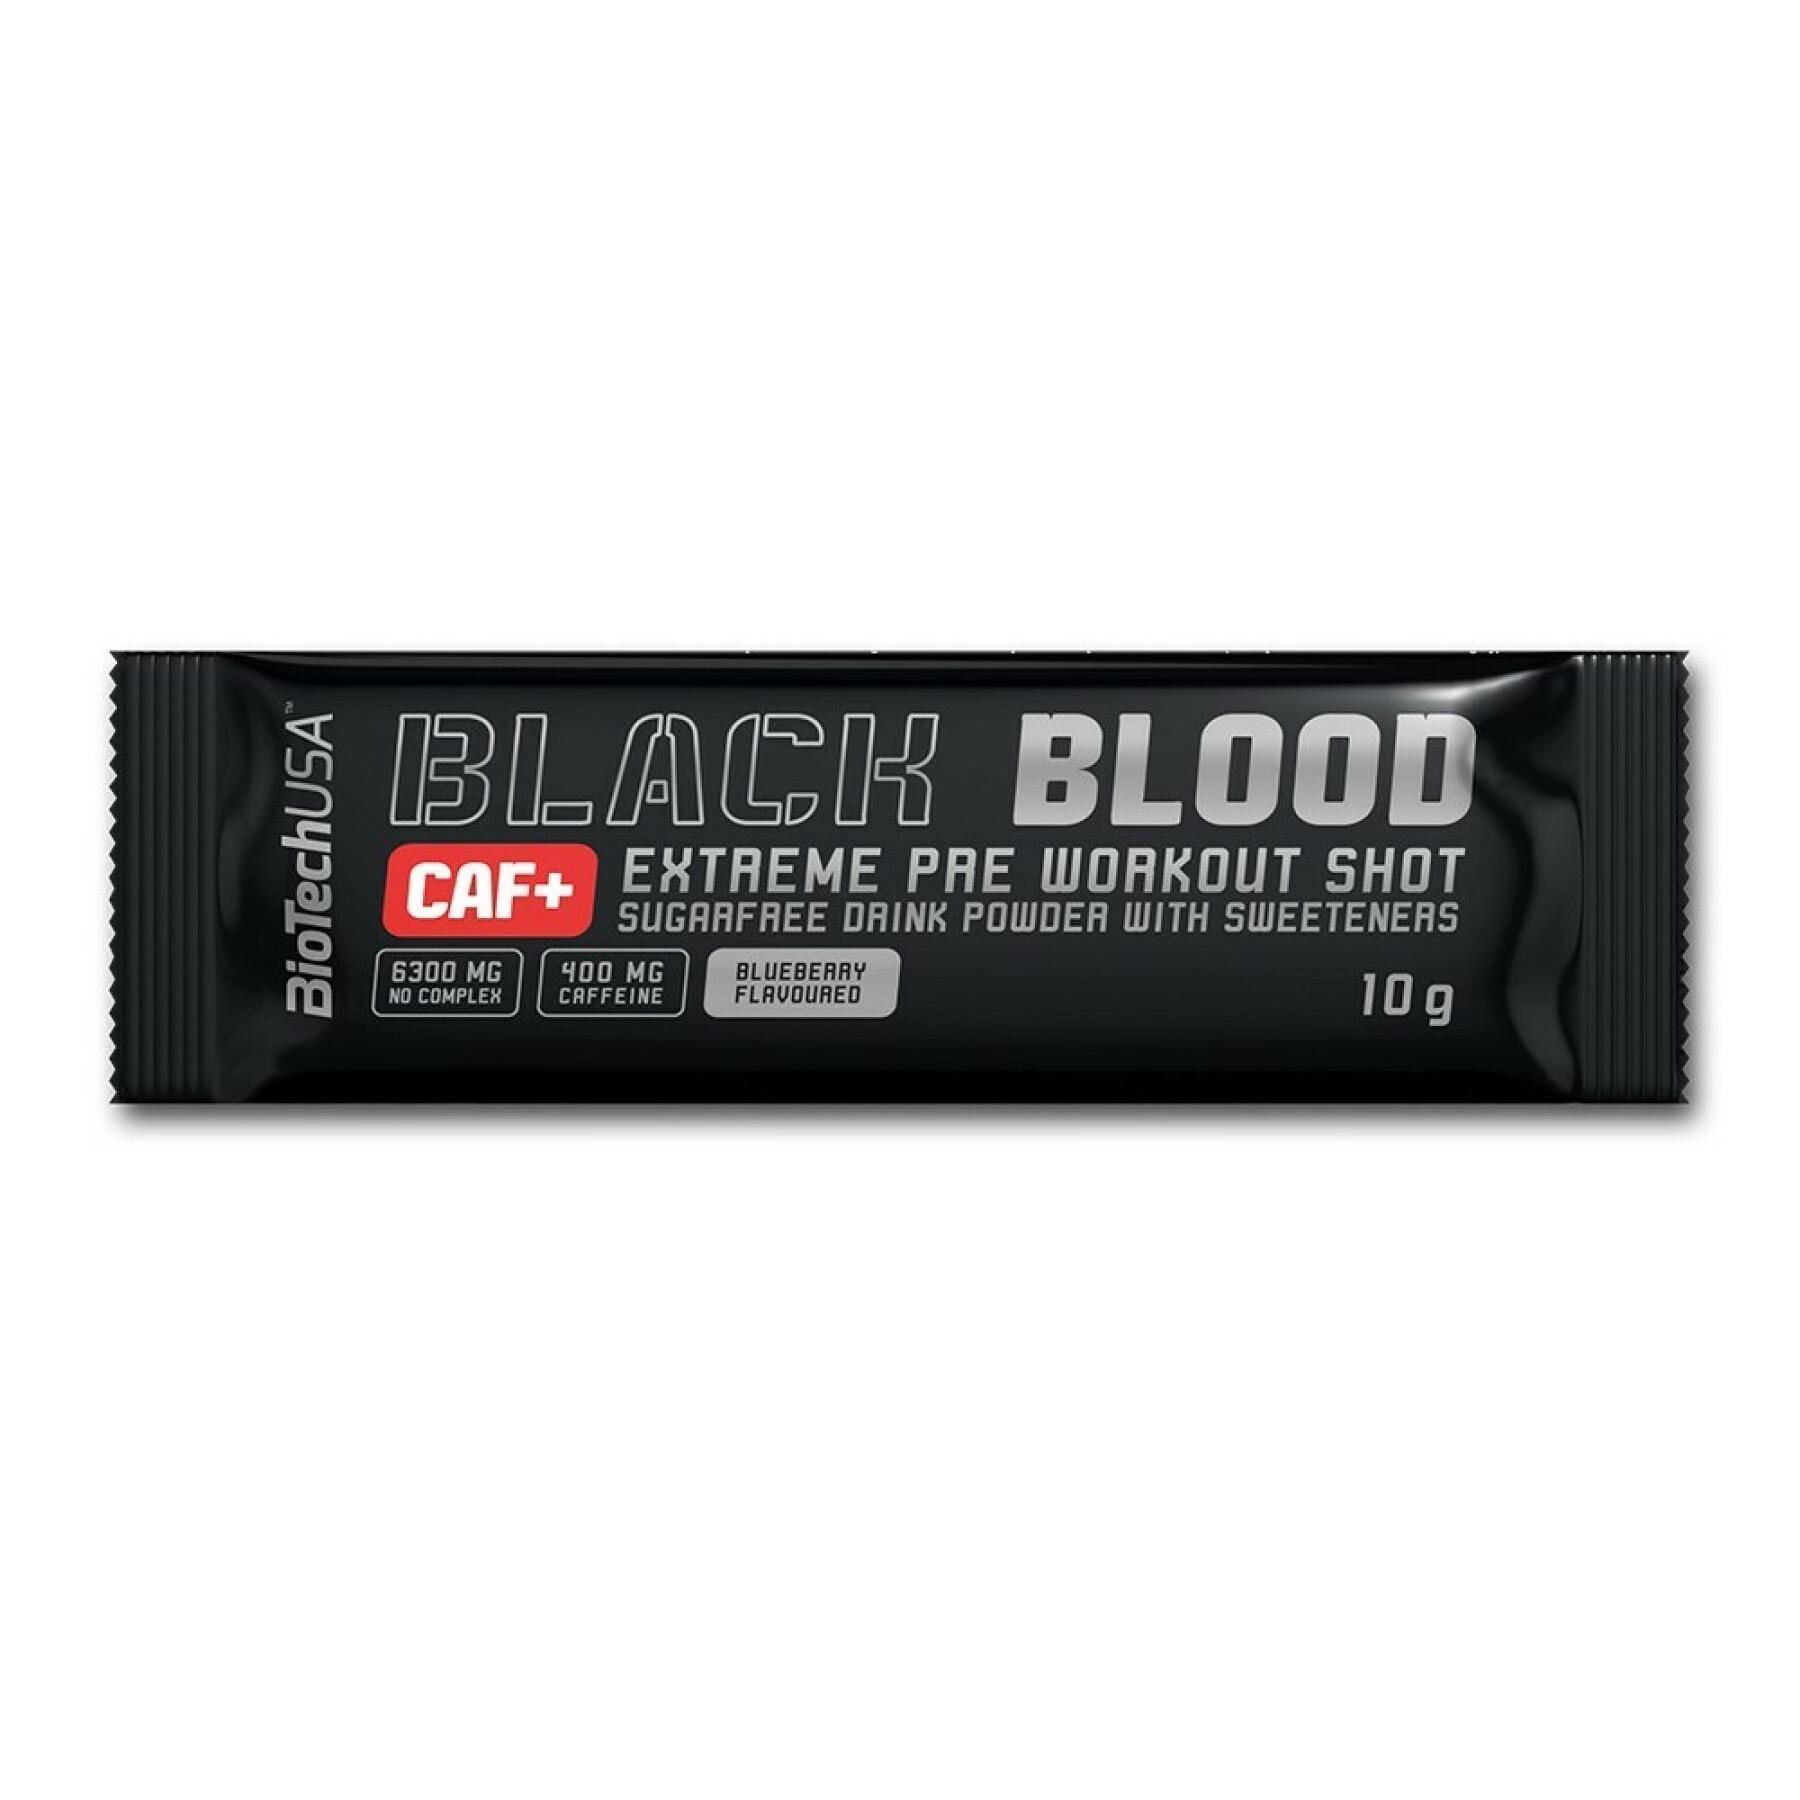 Paquete de 50 paquetes de refuerzo Biotech USA black blood caf + - Raisin bleu - 10g